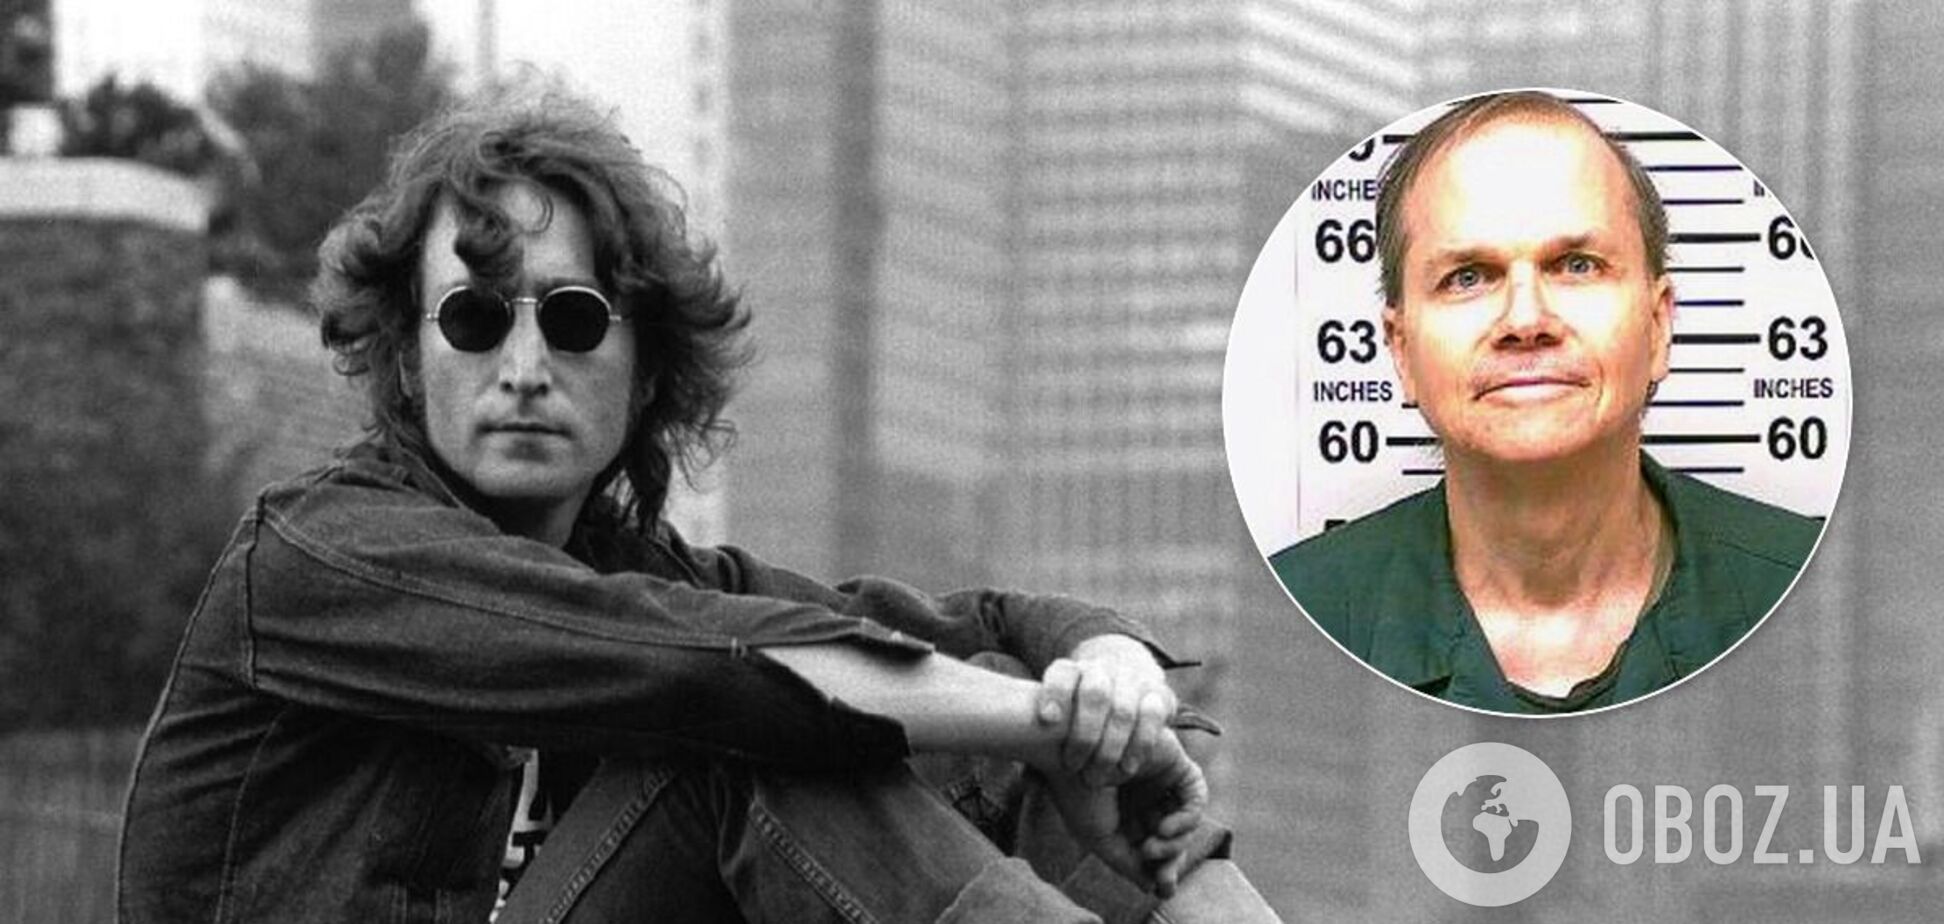 Вбивця Джона Леннона в 11-й раз намагався вийти на свободу